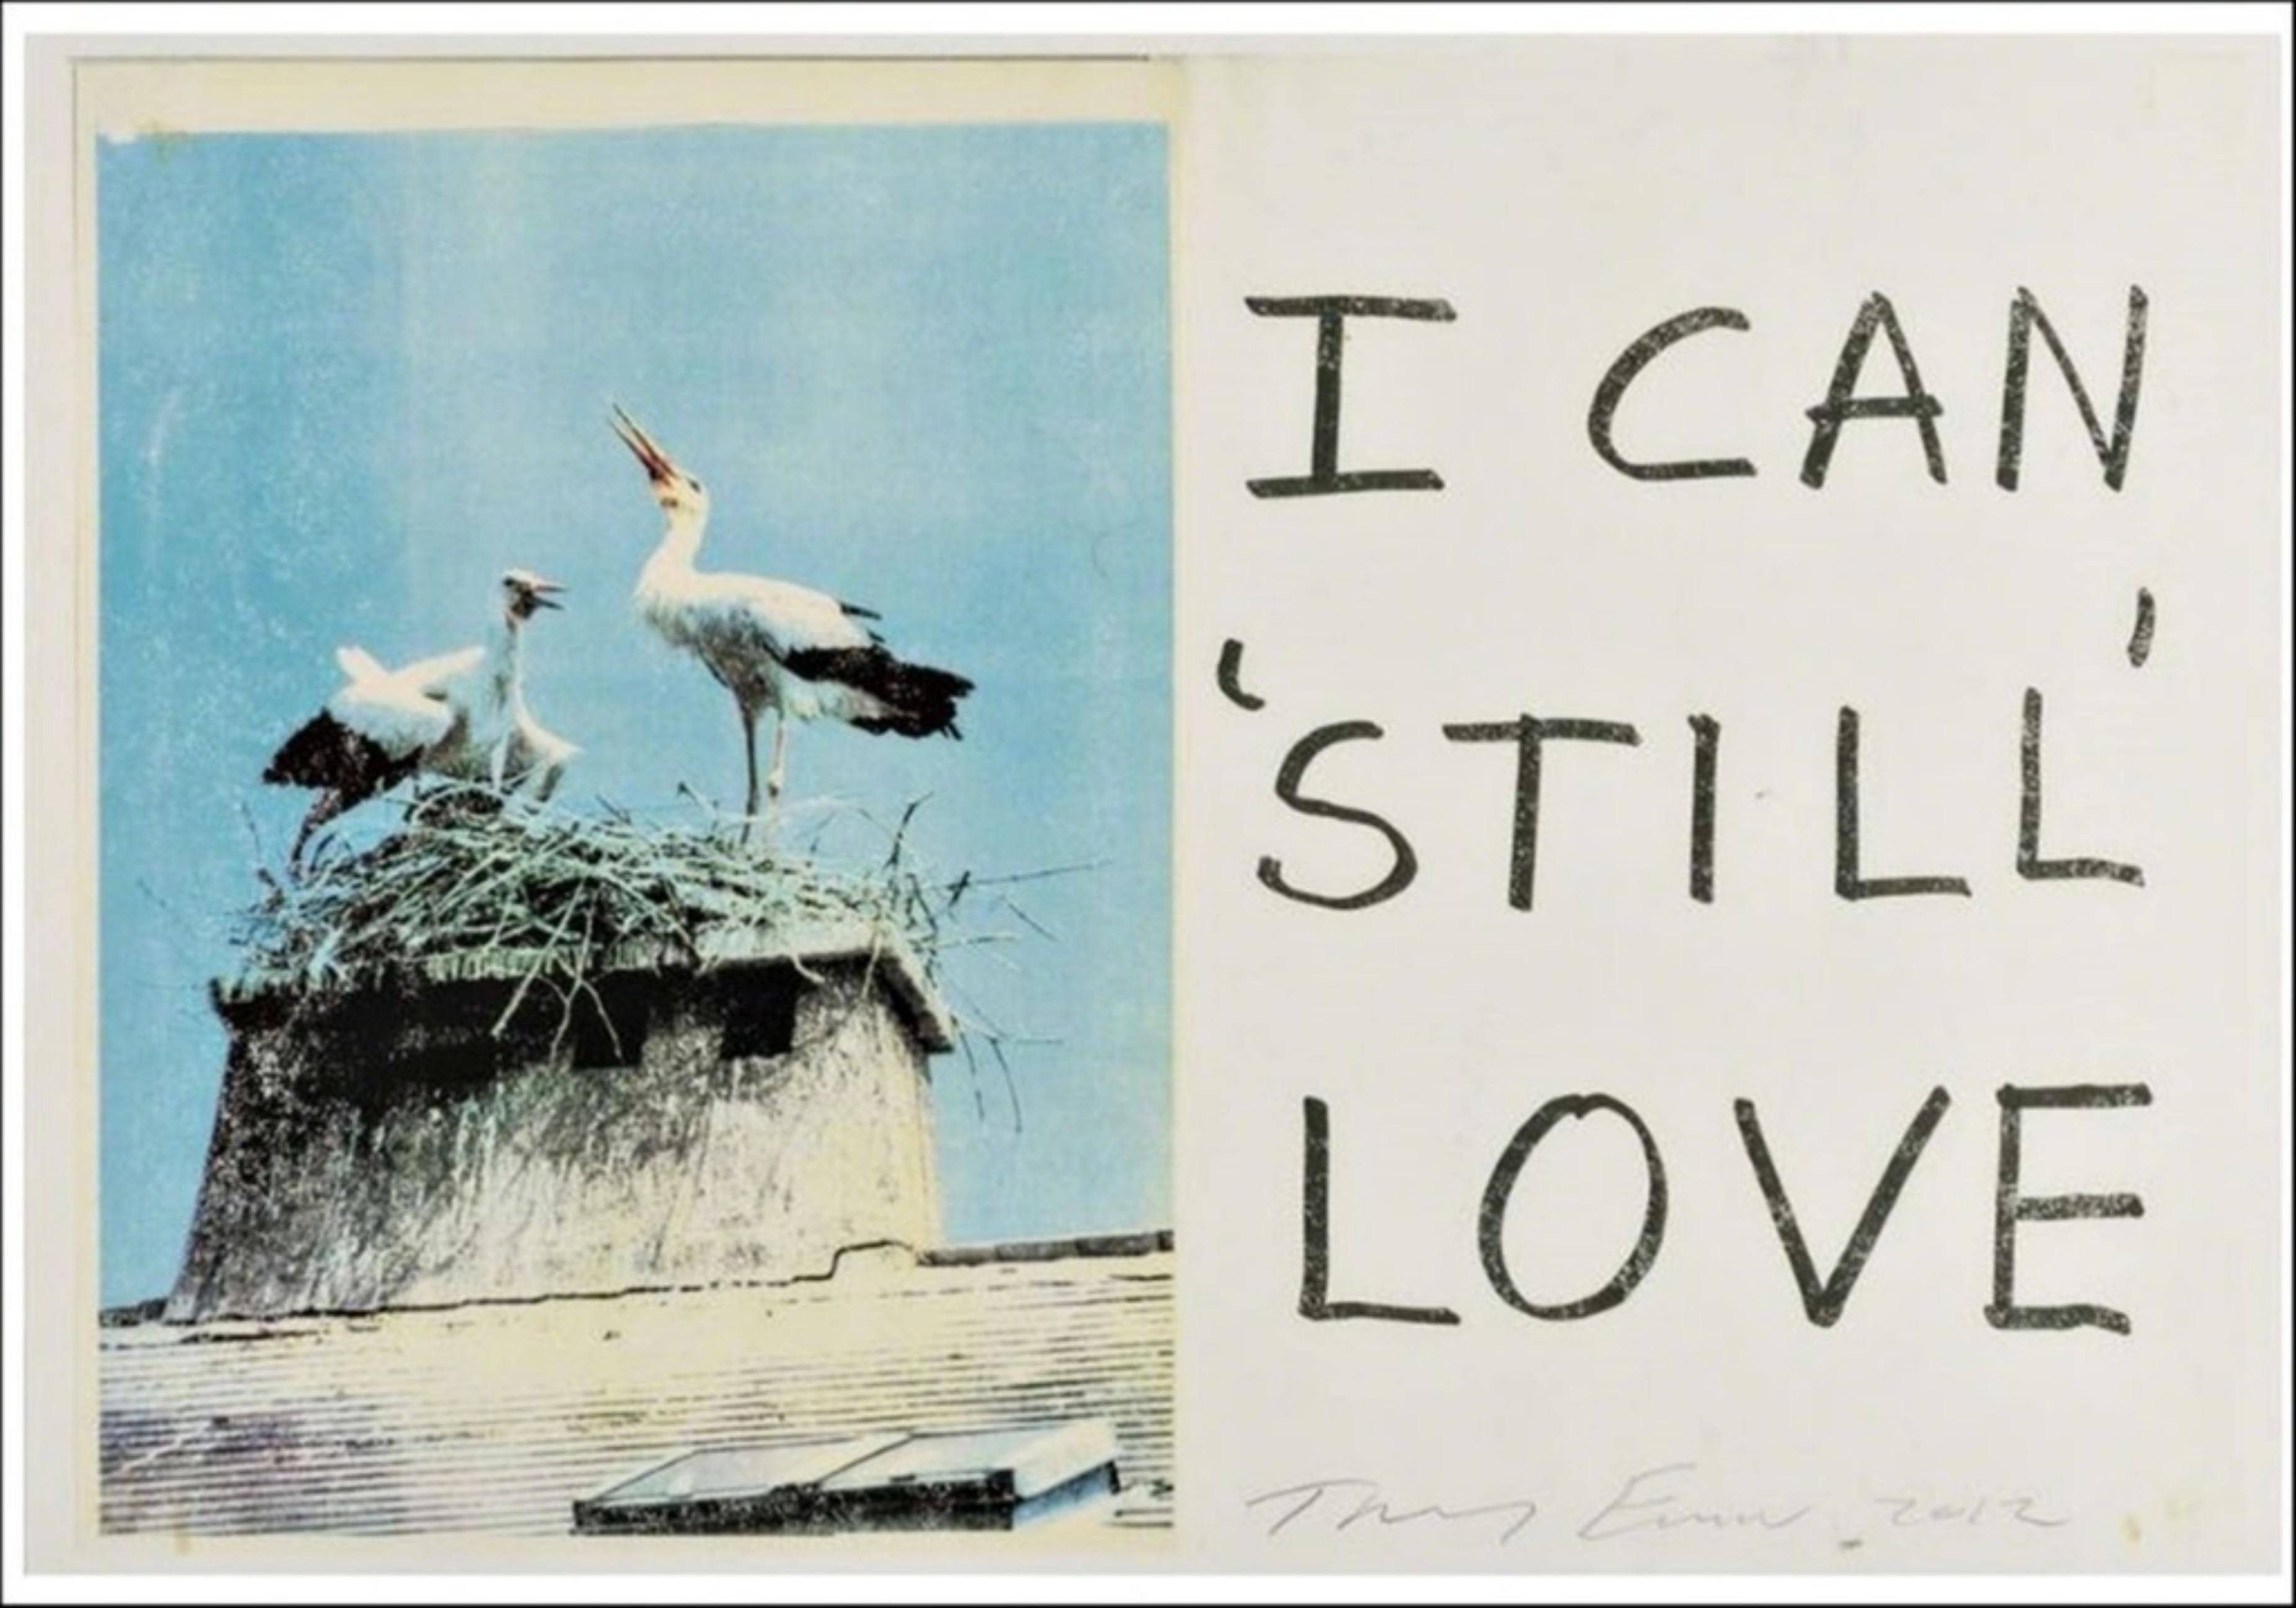 Animal Print Tracey Emin - I Can Still Love (estampe artisanale signée à la main) romantique de l'artiste britannique pop YBA